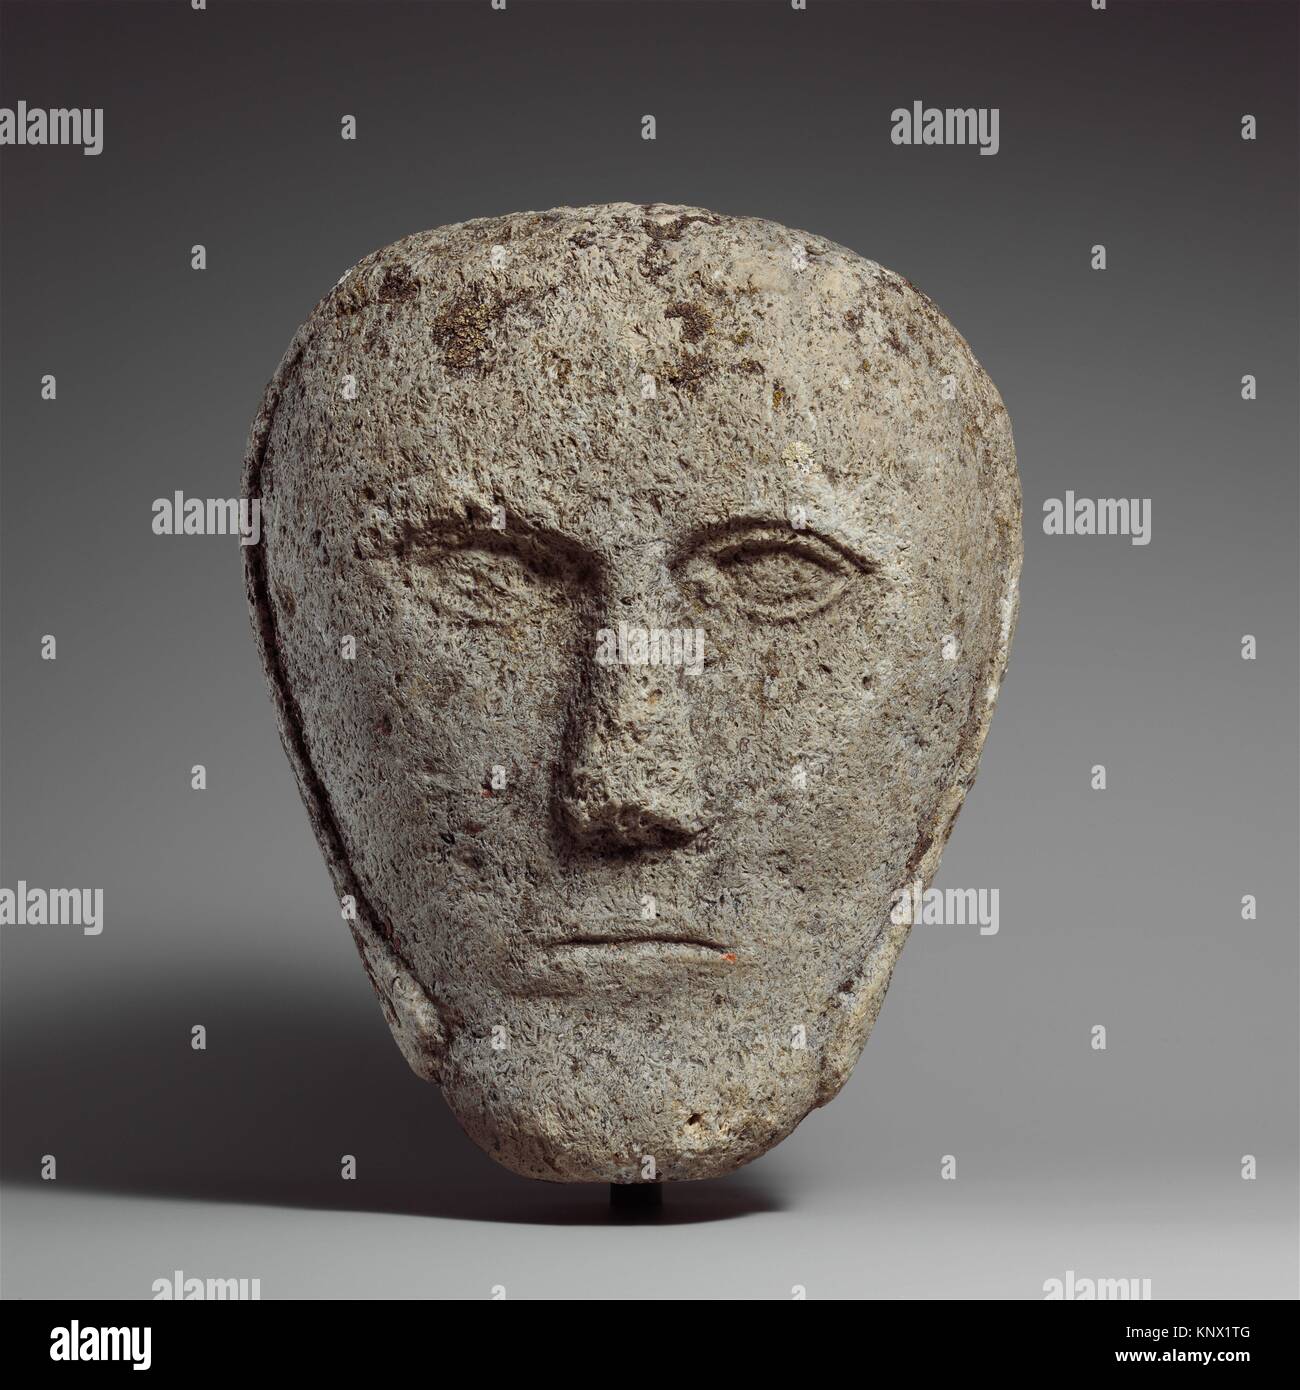 Kopf von einem Mann, der eine Kappe oder Helm. Datum: evtl. 2nd-3rd Century; Geographie: In vermutlich Britischen Inseln; Kultur: Celtic; Medium: Stockfoto